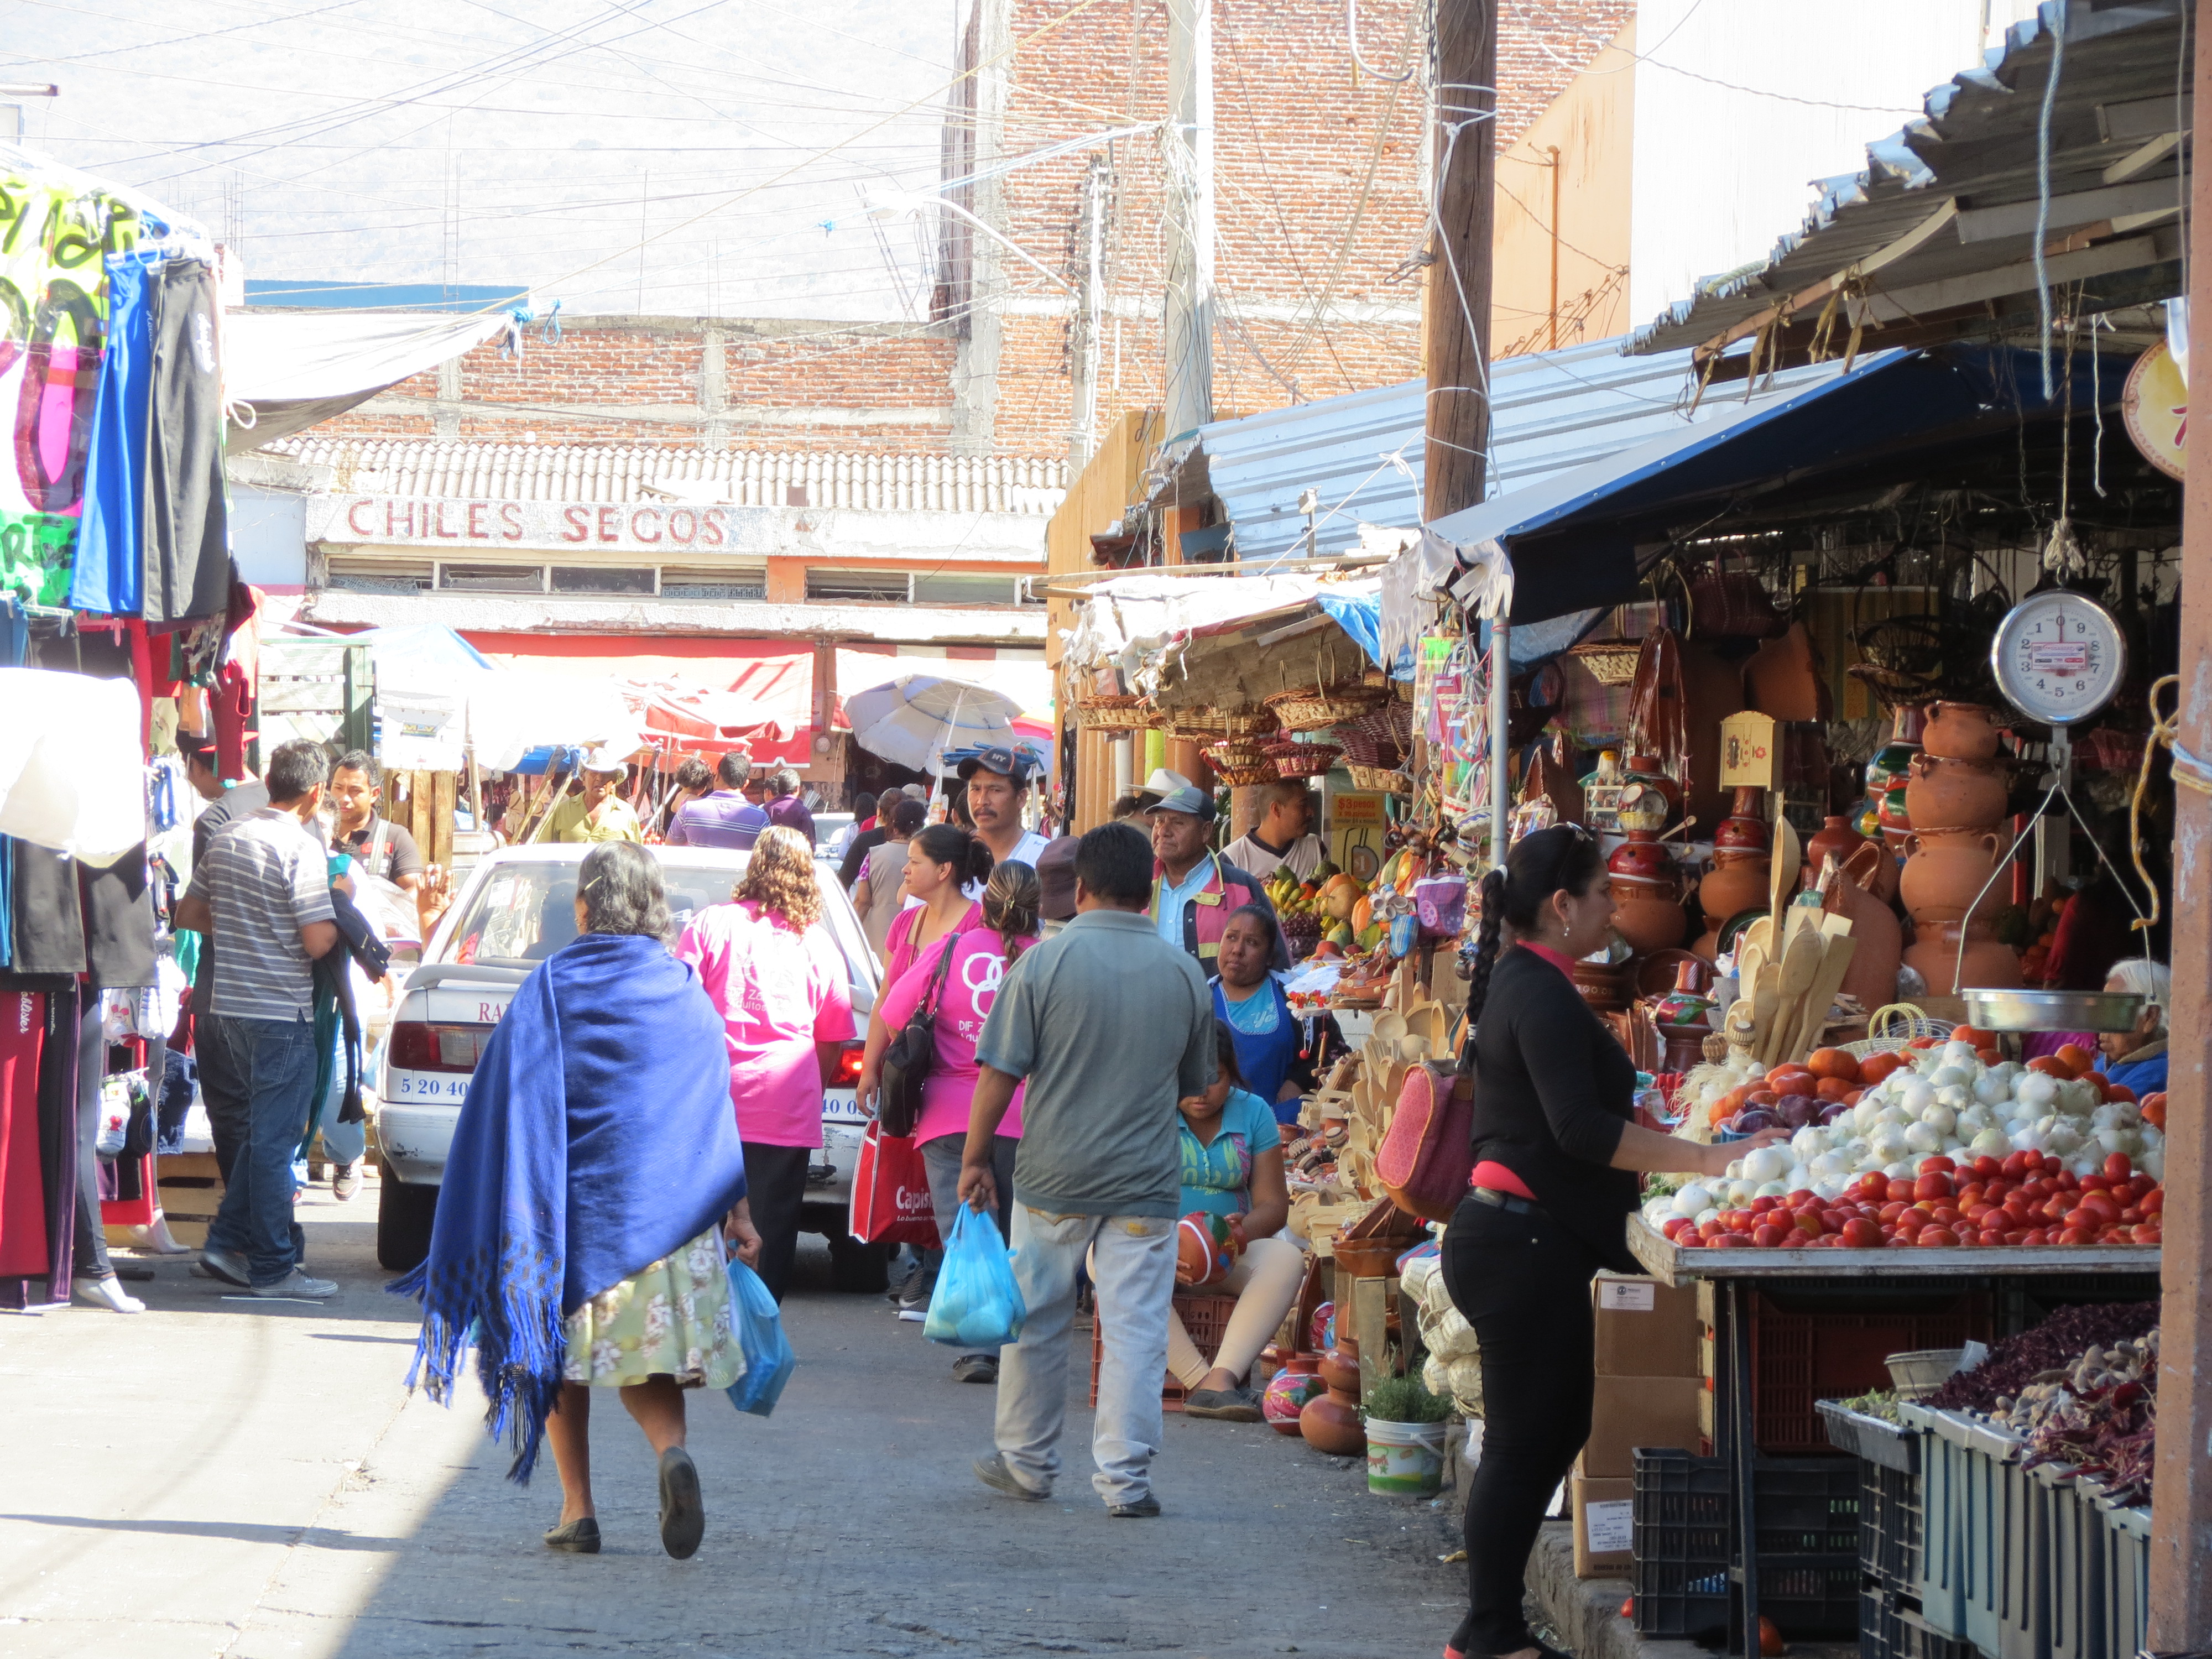 Ambulantes del Mercado Hidalgo son un peligro para la seguridad